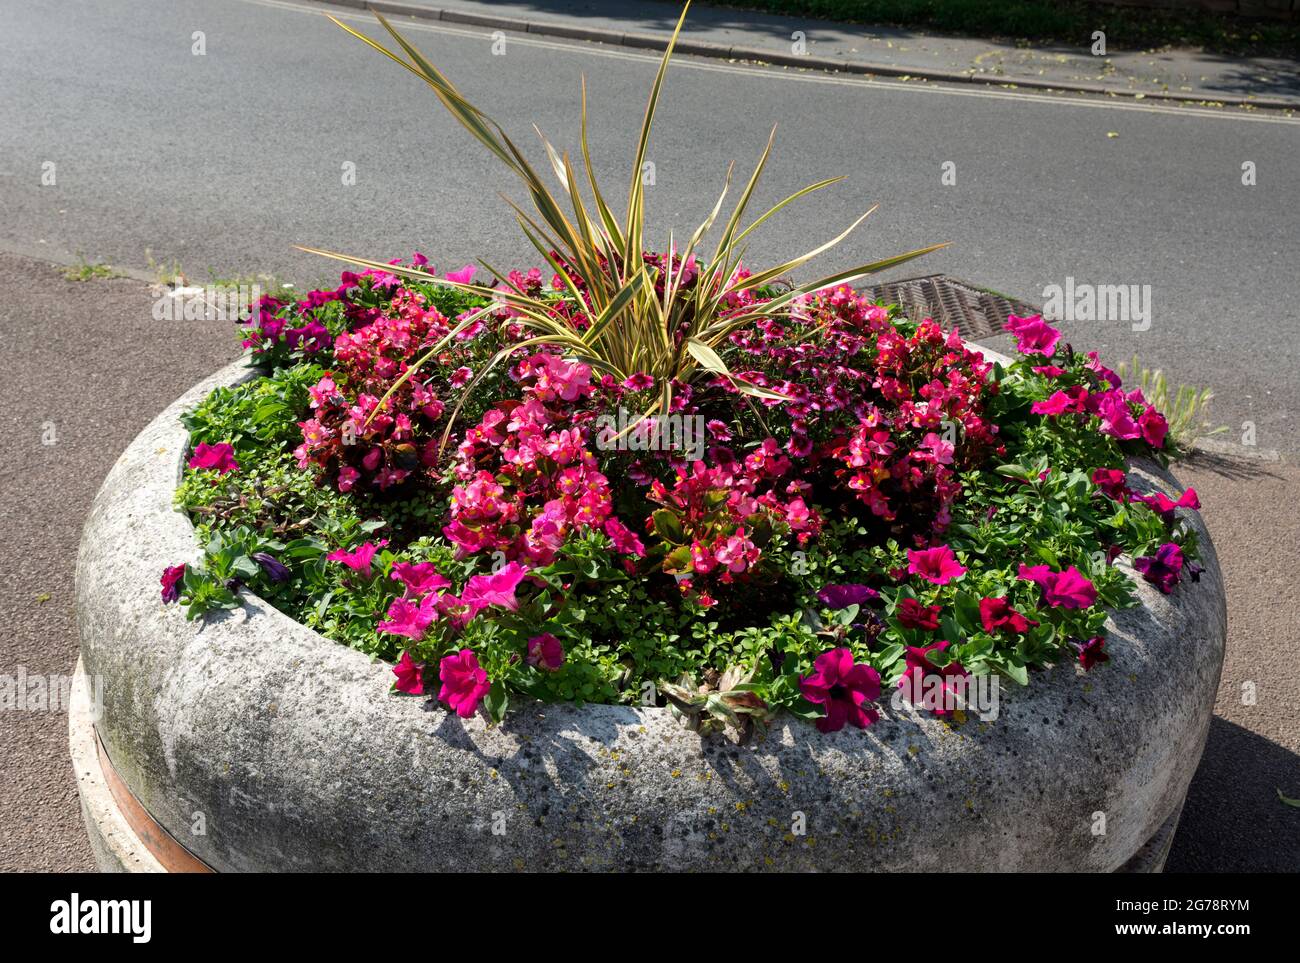 Jardinière en bord de route avec fleurs d'été, centre-ville de Stratford-upon-Avon, Warwickshire, Angleterre, Royaume-Uni Banque D'Images